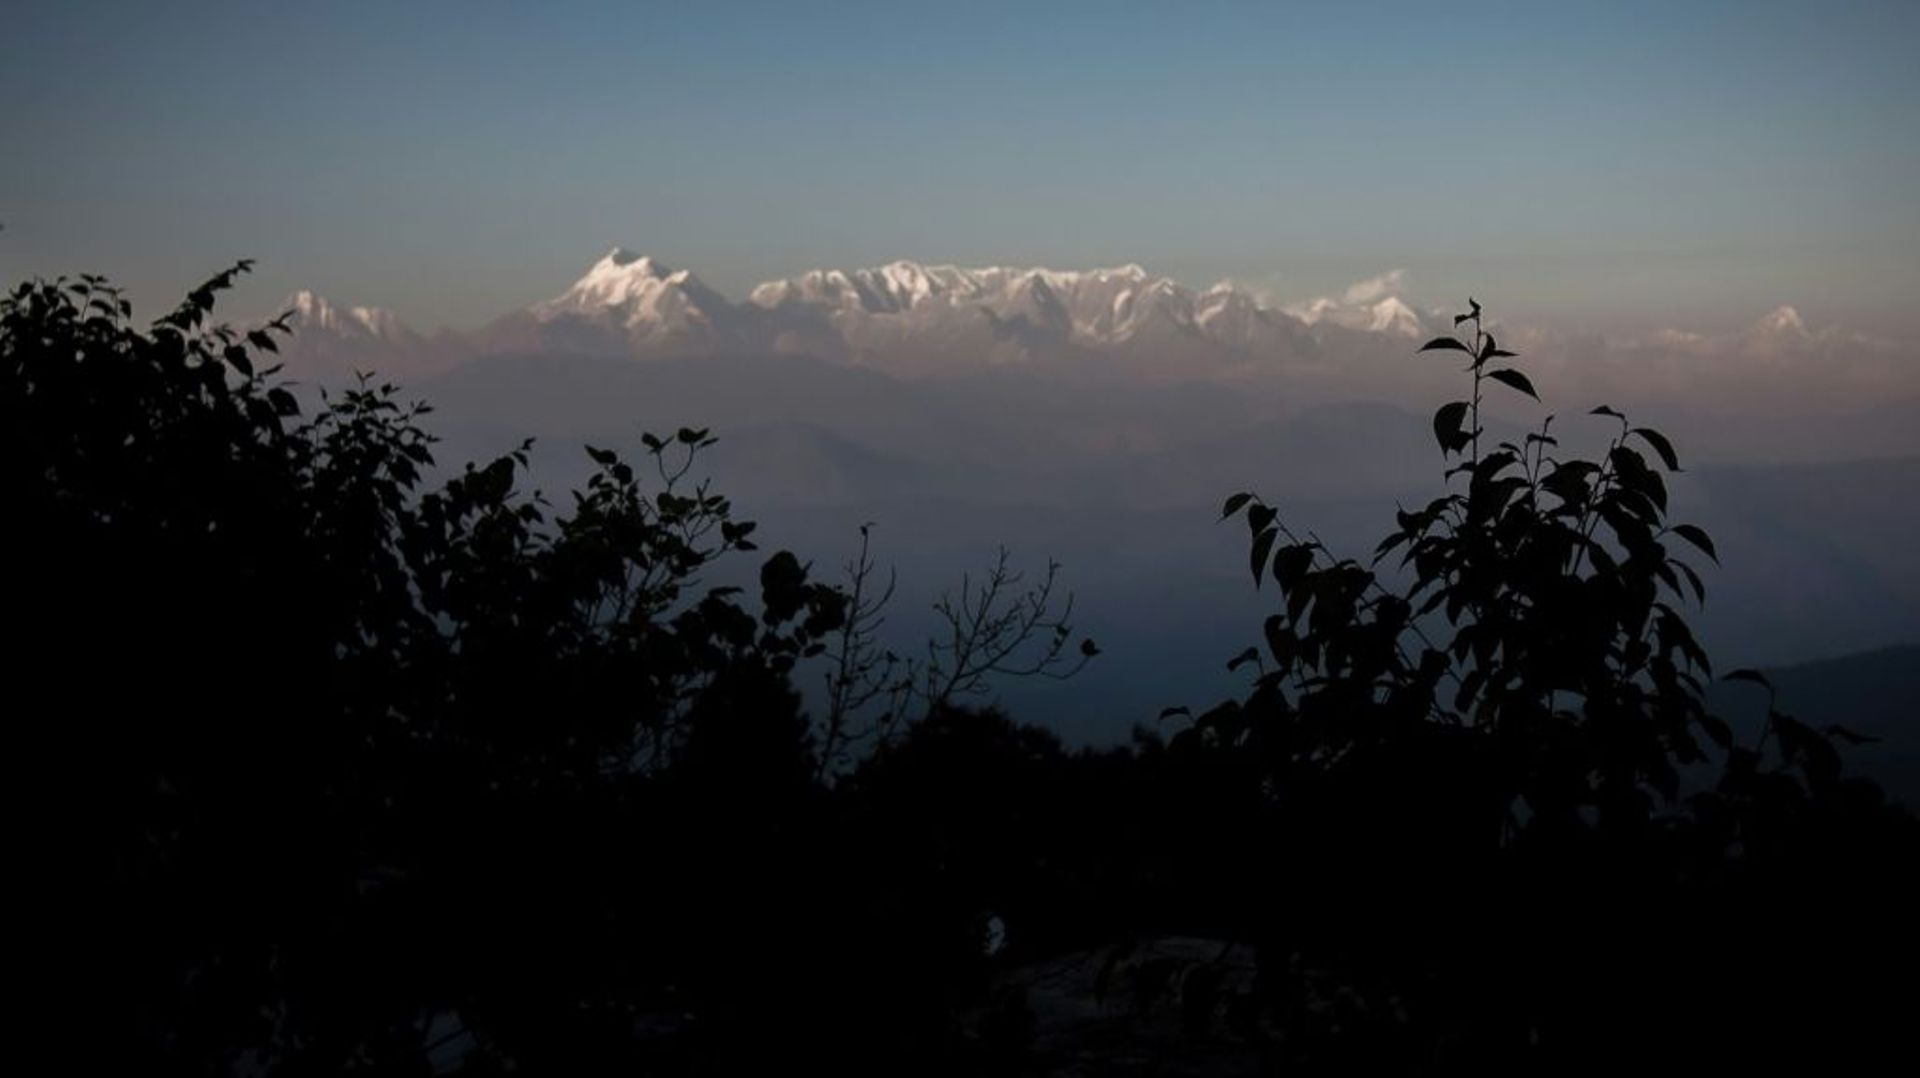 Des centaines d'alpinistes venus du monde entier escaladent les sommets indiens de la chaîne de l'Himalaya (vue de l'Himalaya depuis la station de Kausani)
